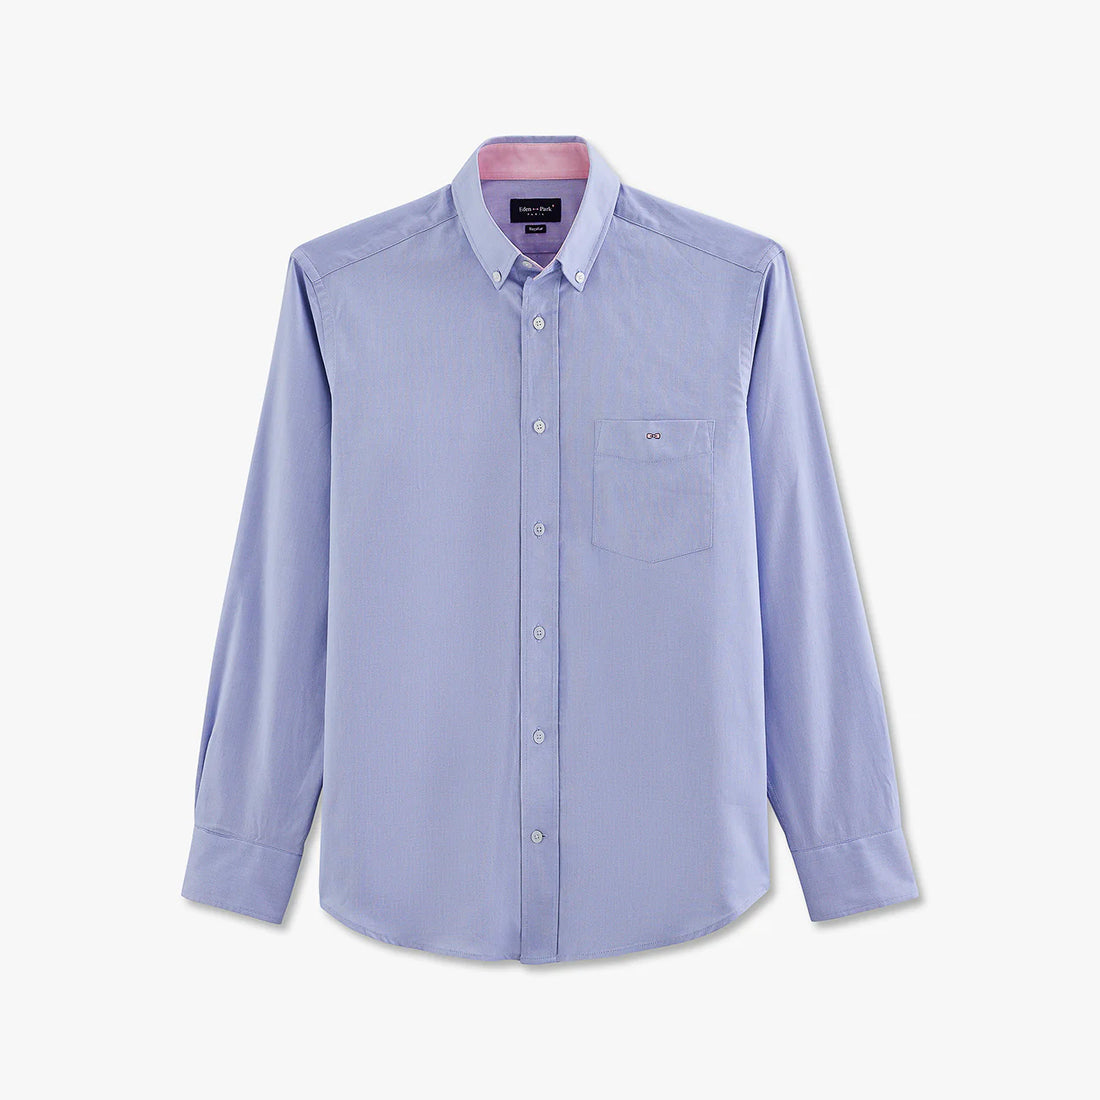 light-blue-cotton-shirt_ppshiche0020_blm_02